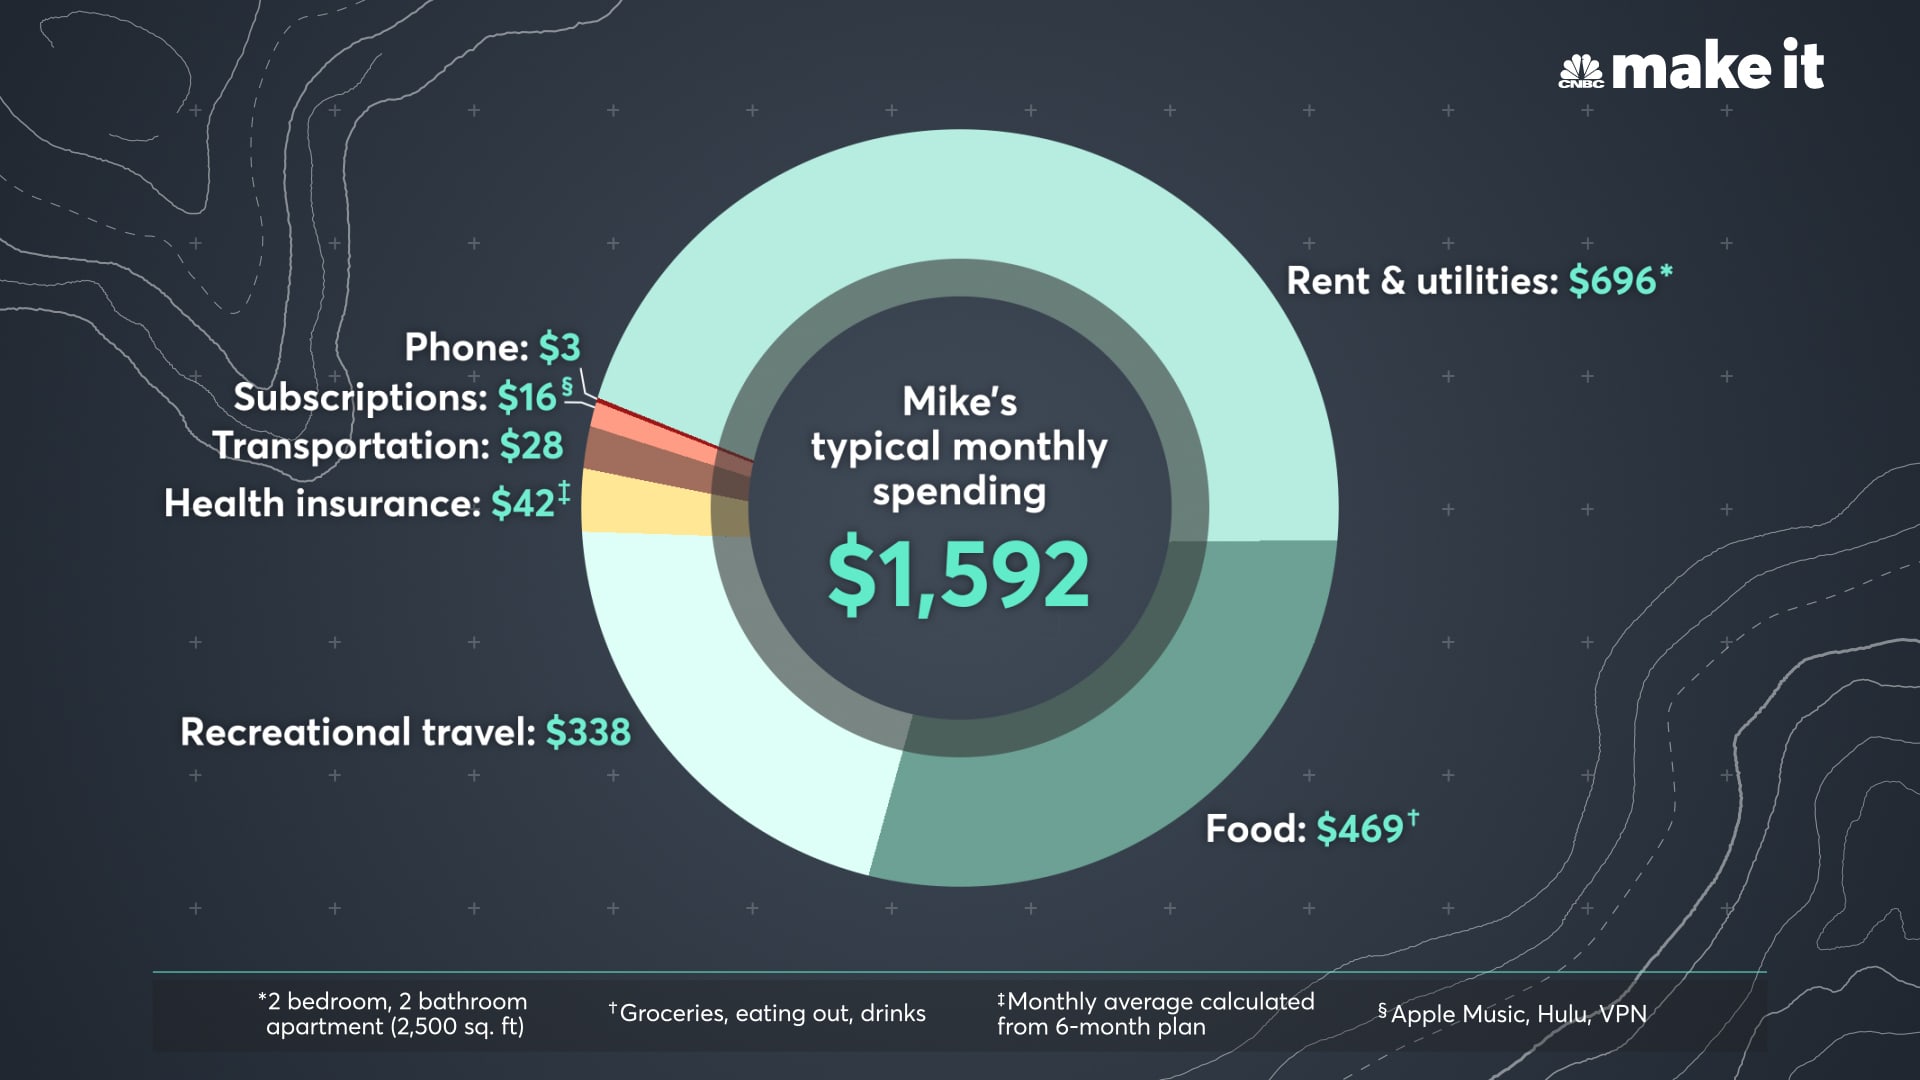 Mike Swigunski's average monthly spending